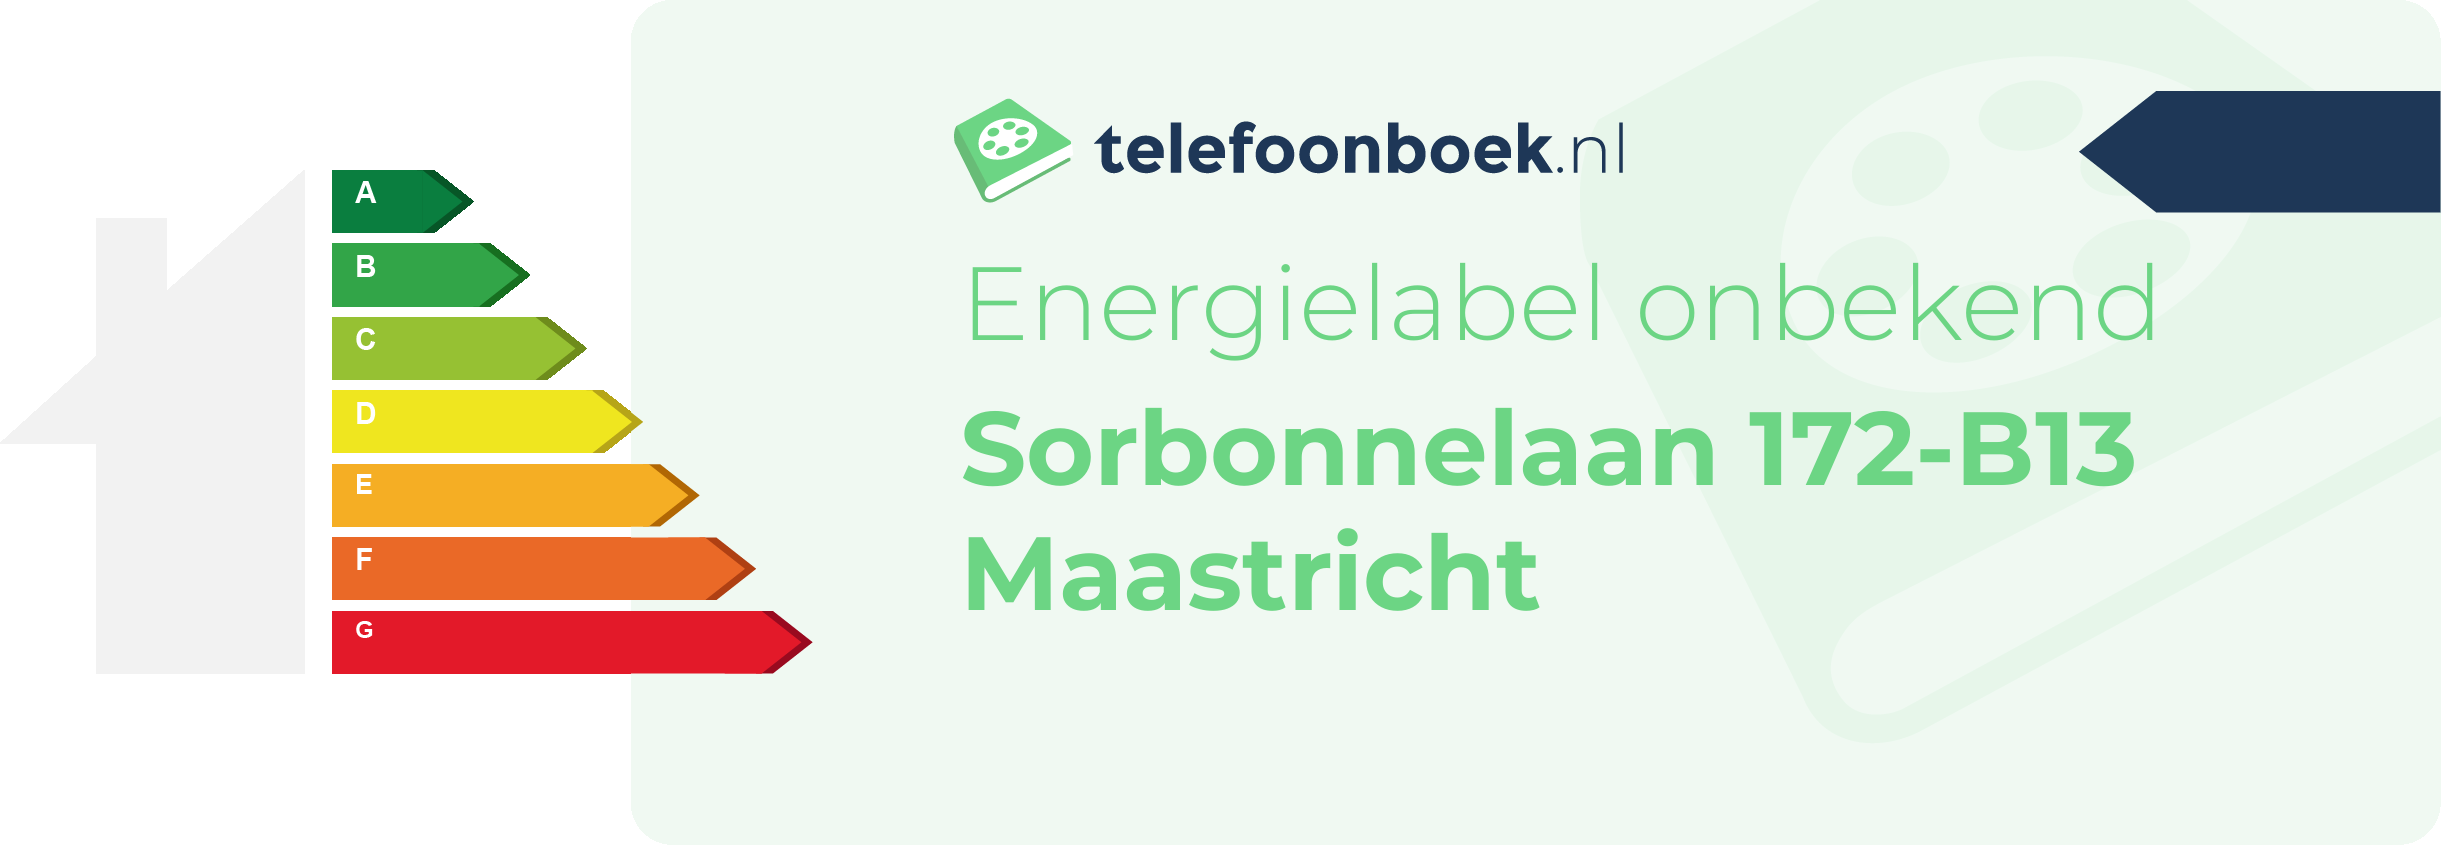 Energielabel Sorbonnelaan 172-B13 Maastricht